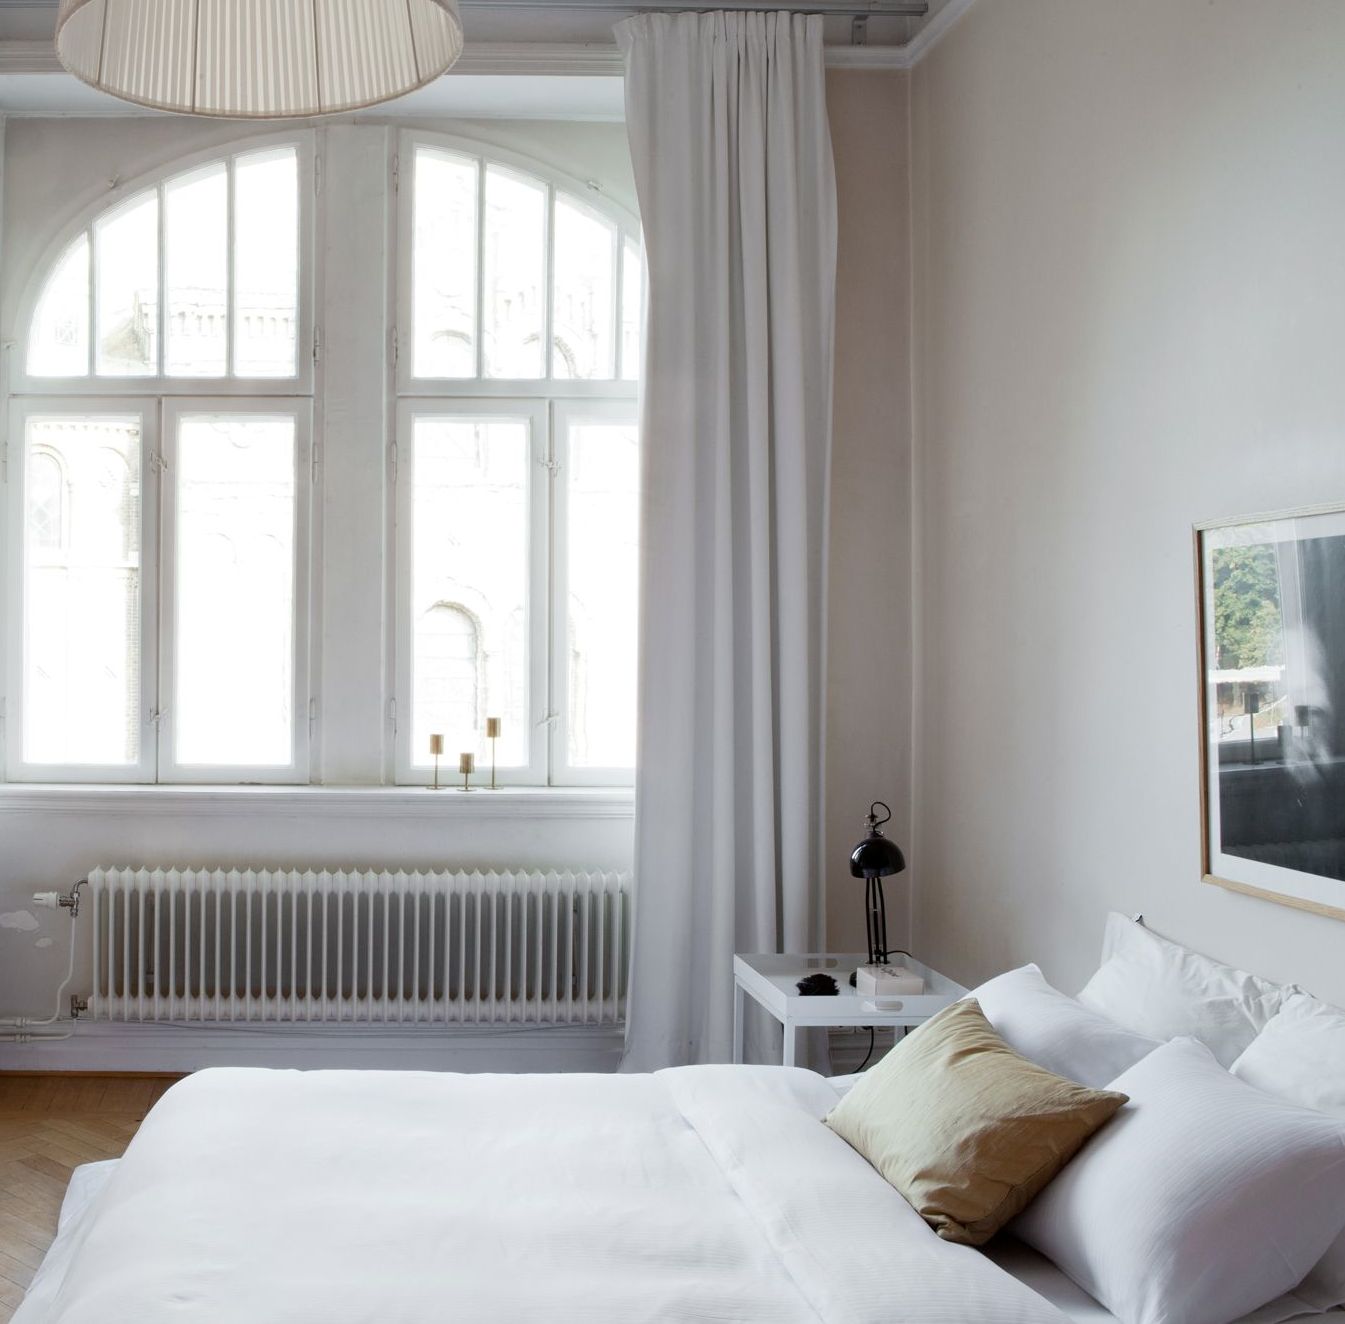 Beautiful classic apartment - via Coco Lapine Design